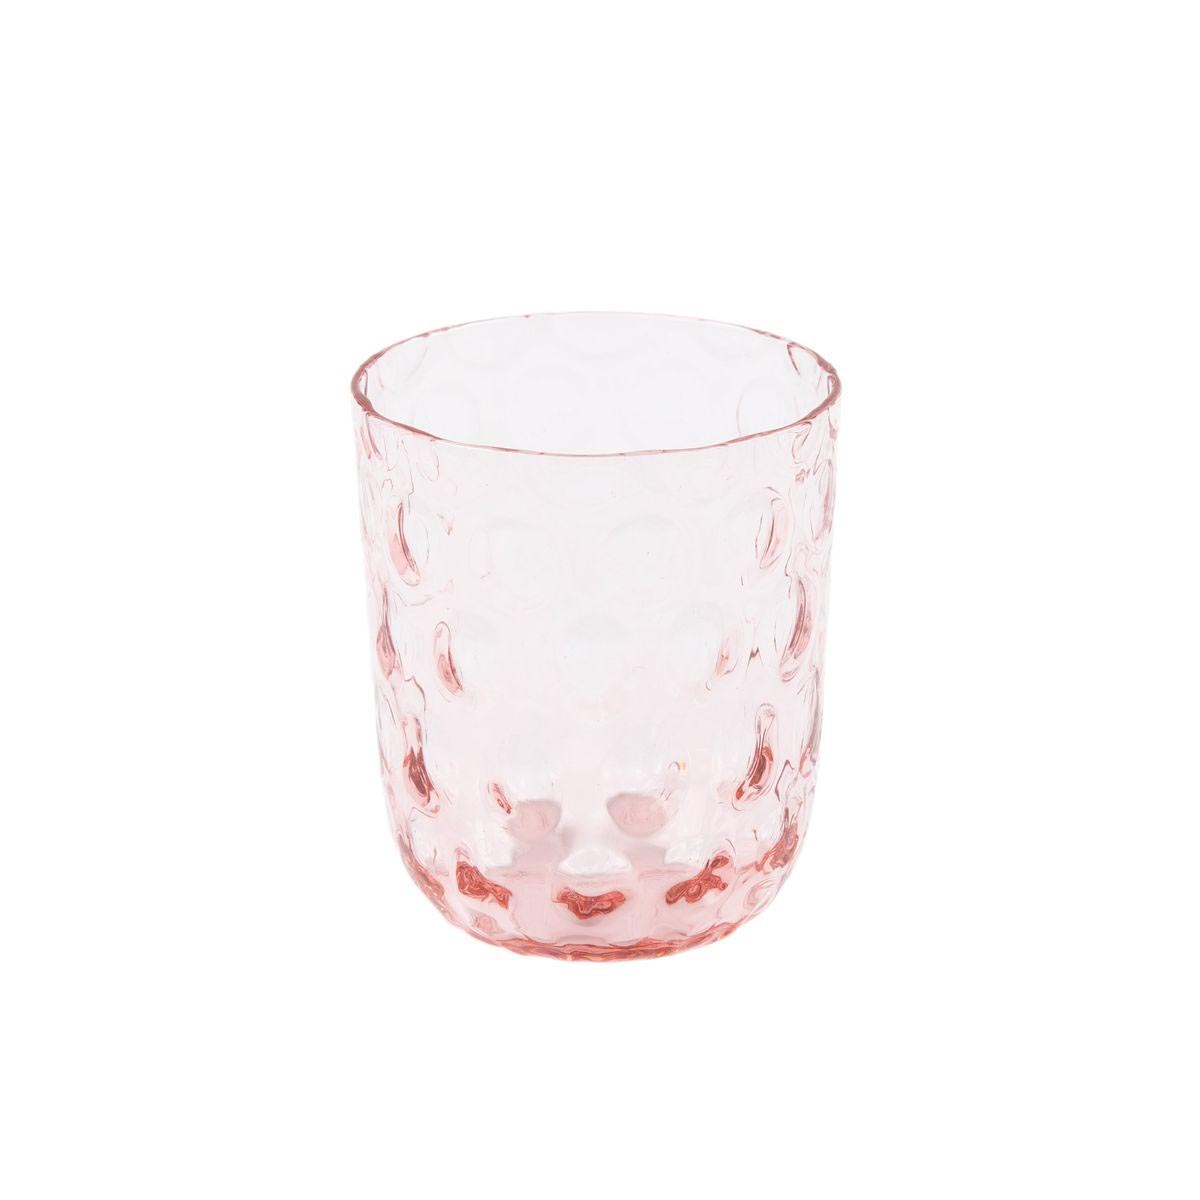 verre à eau en verre rose h9xd7cm